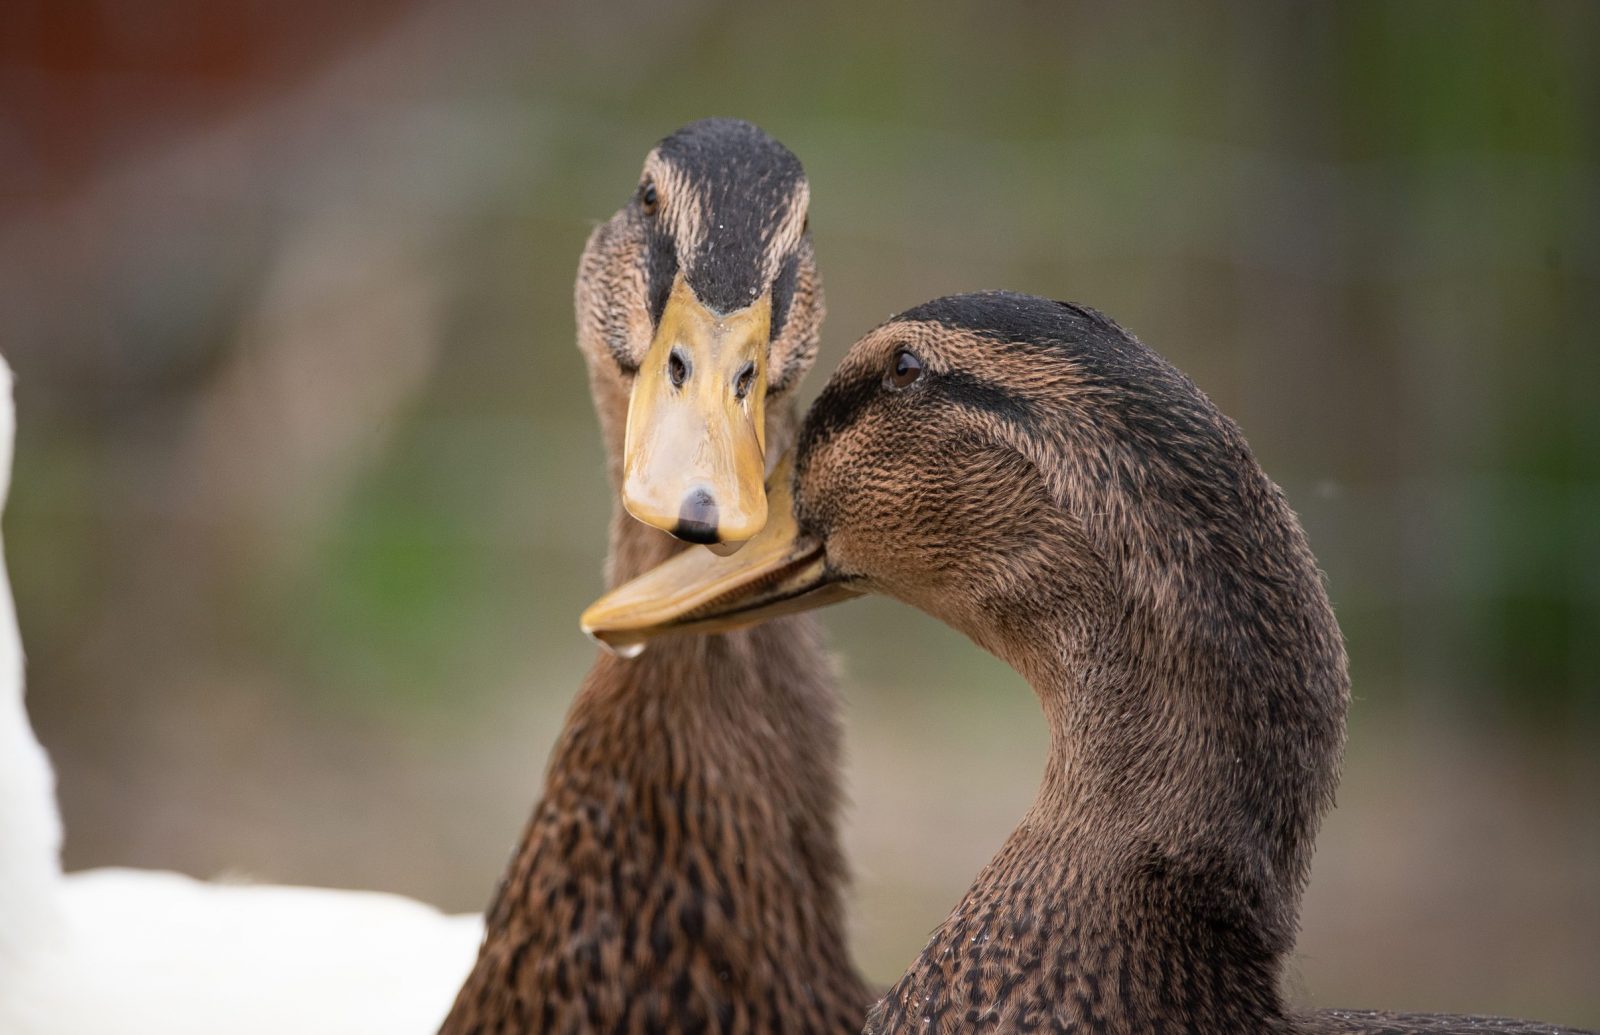 Macka and Milo ducks touching bills